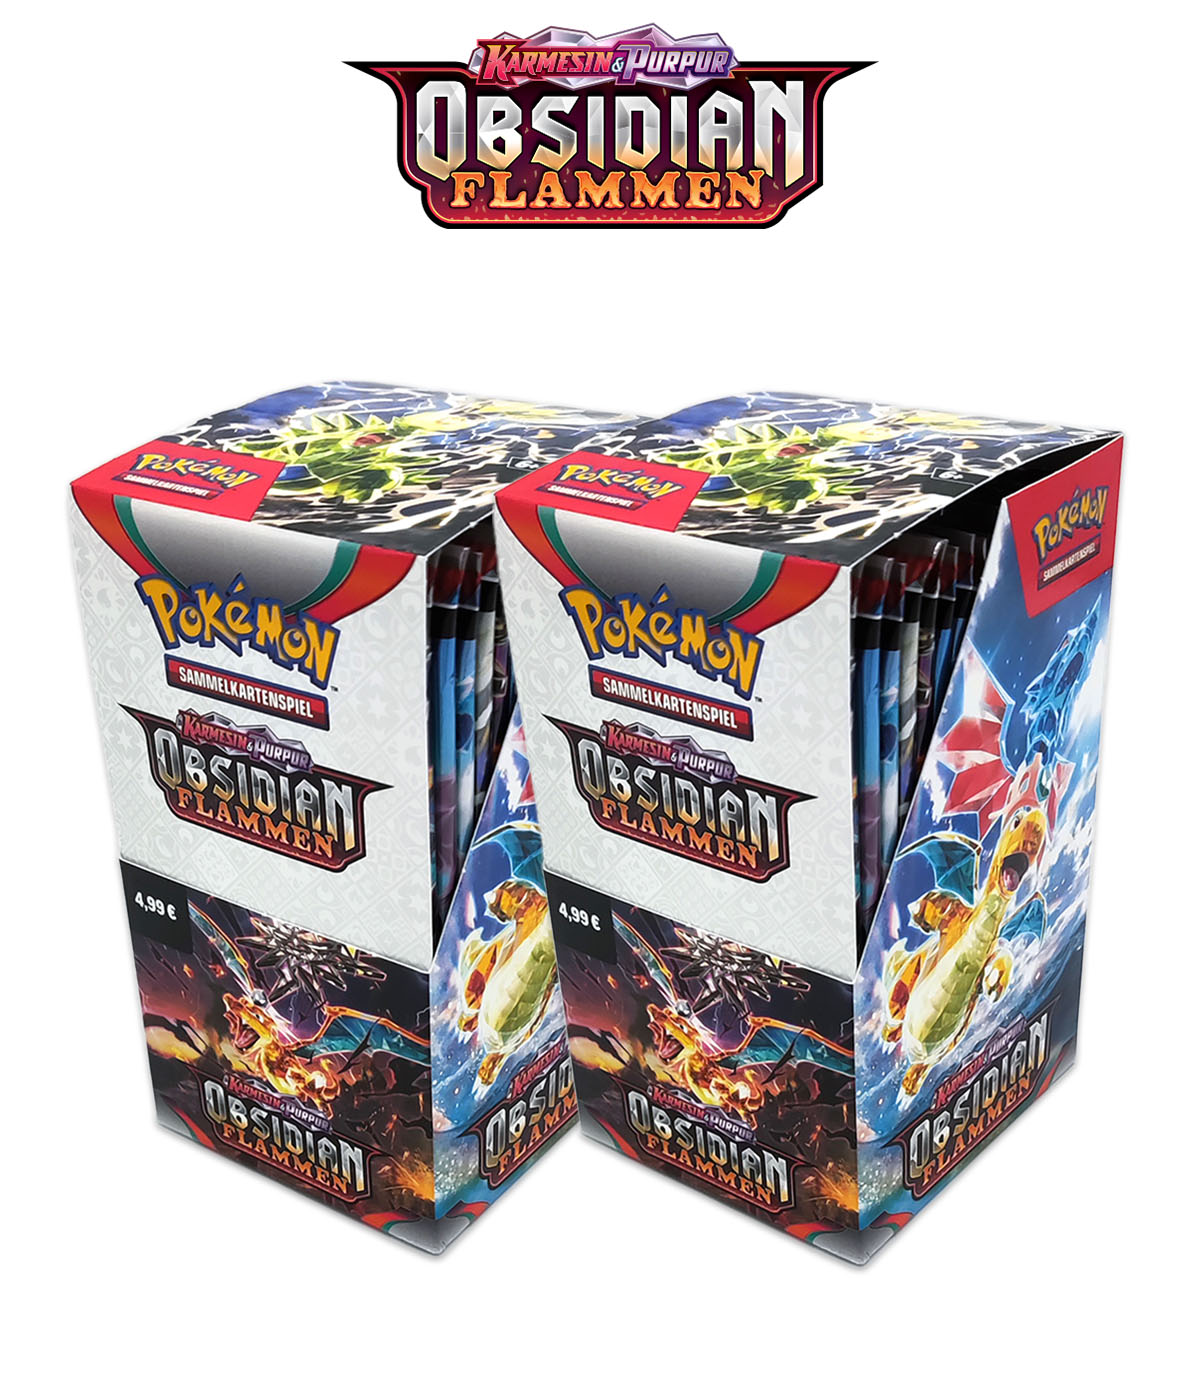 Pokémon Double Bundle "Obsidianflammen" - 2 Displays mit je 18 Boosterpacks + Ultra Pro Soft Sleeves (100er Packung)